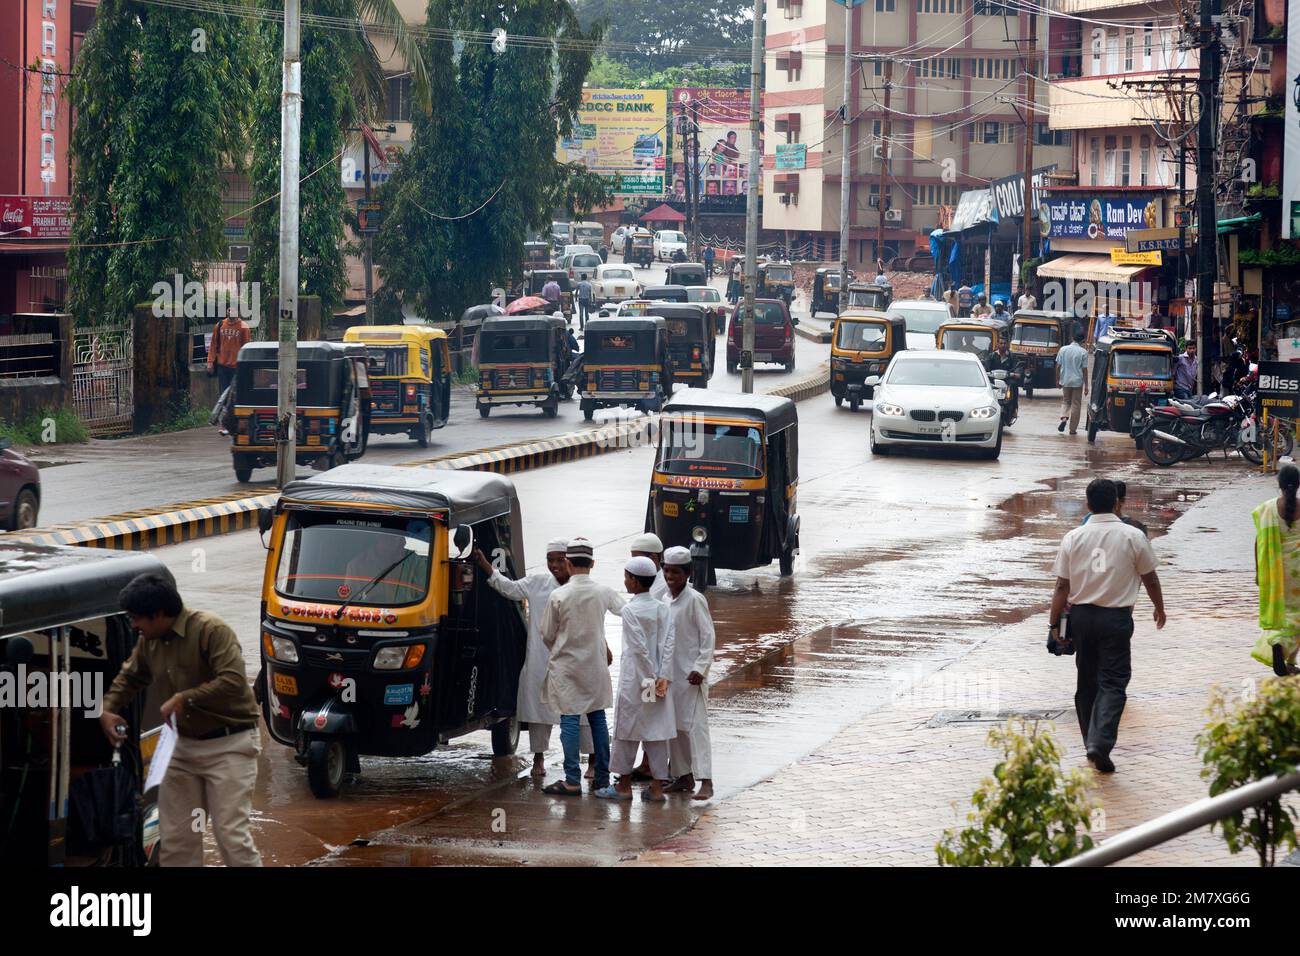 Mangalore, Indien - 3. September 2012: Der Verkehr auf den Straßen von Mangalore ist ein großes Durcheinander. Taxis, Mopeds und Fußgänger überqueren die Straße ohne Befehl Stockfoto